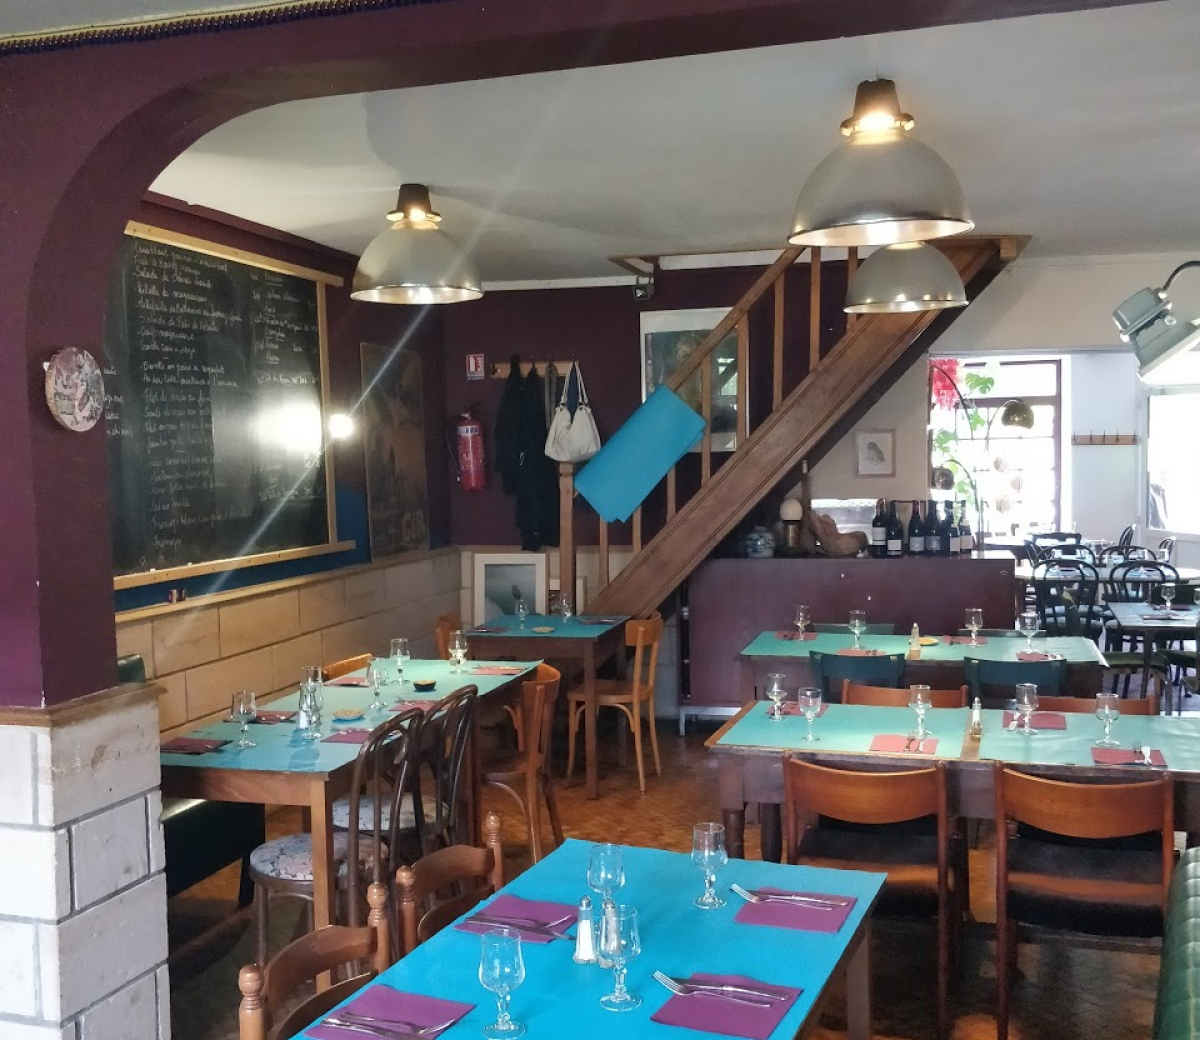 Le Café des Filles, Valmondois